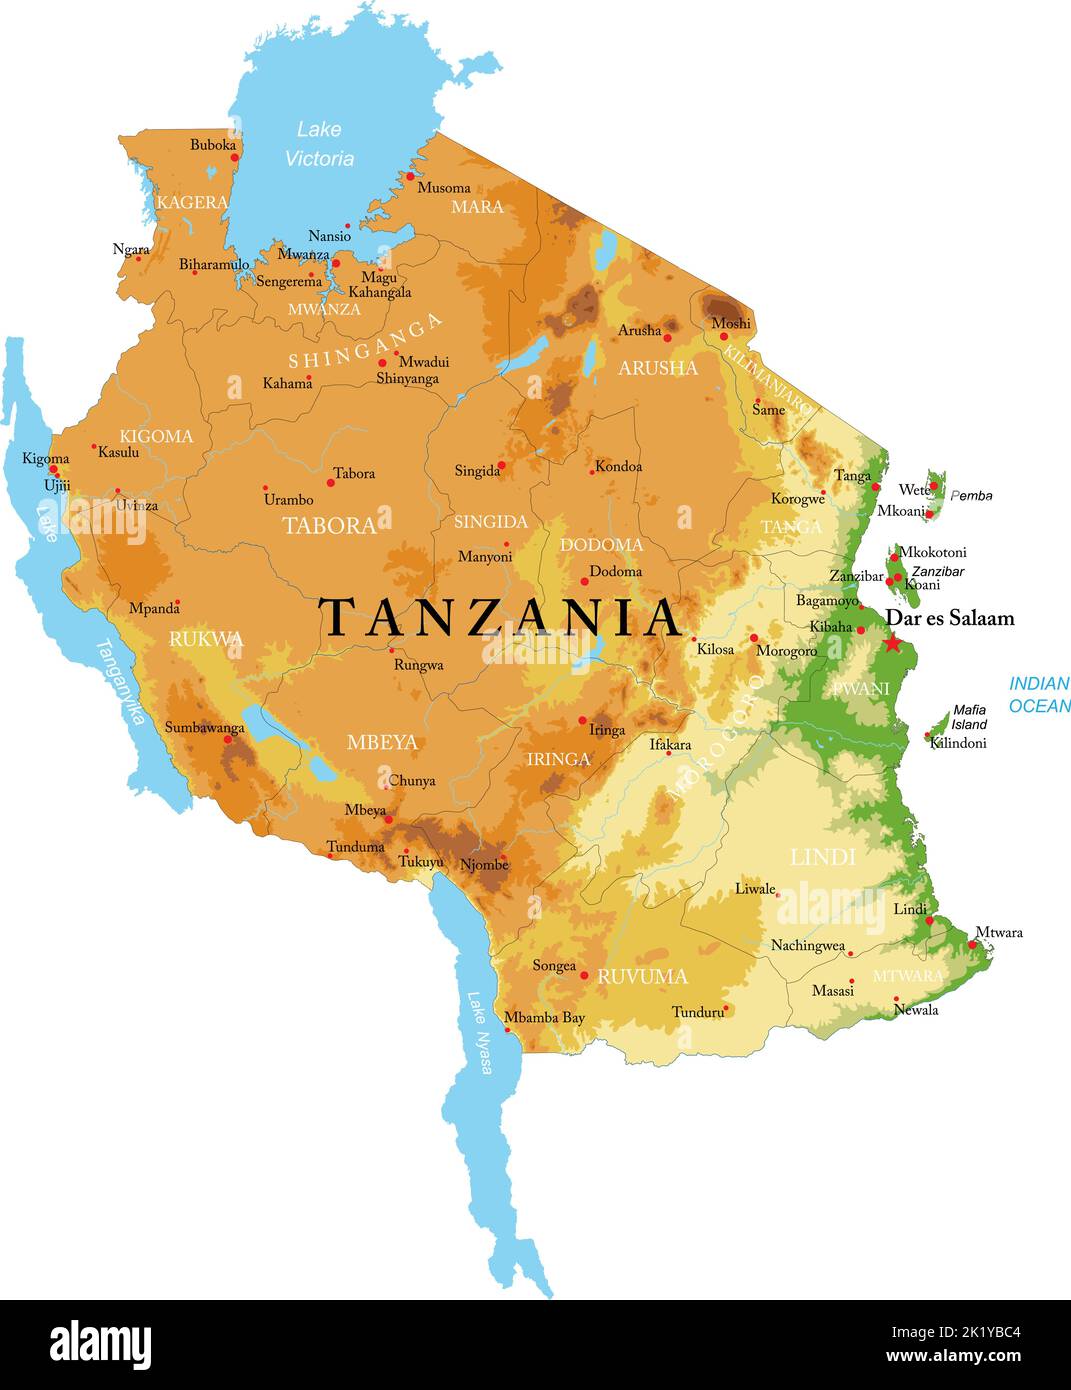 Mappa fisica altamente dettagliata della Tanzania in formato vettoriale, con tutte le forme di rilievo, le regioni e le grandi città. Illustrazione Vettoriale